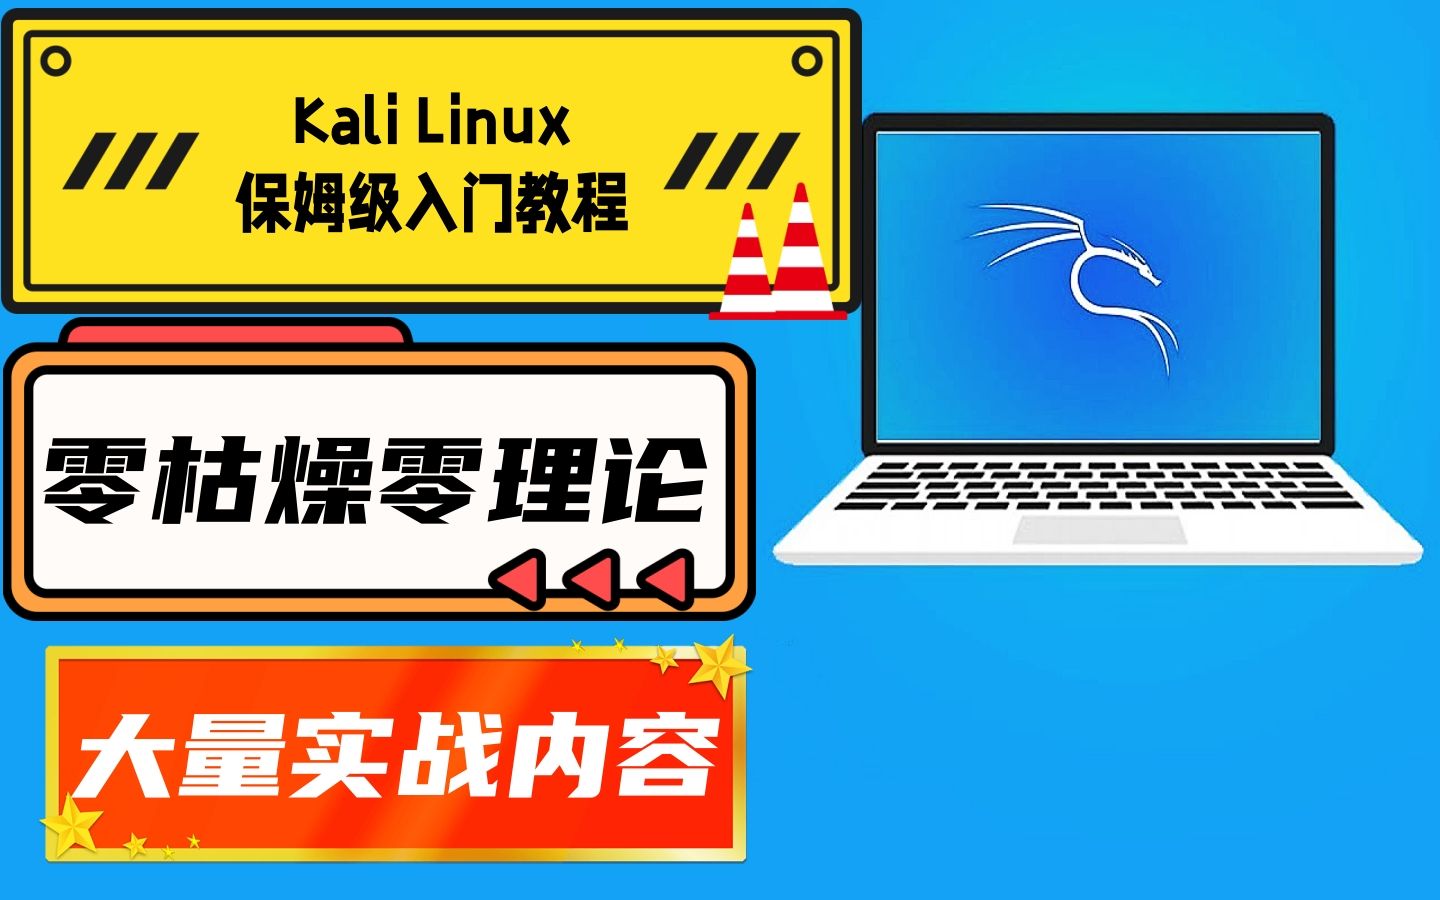 【极客之眼】全新Kali Linux零基础新手入门教程第五集